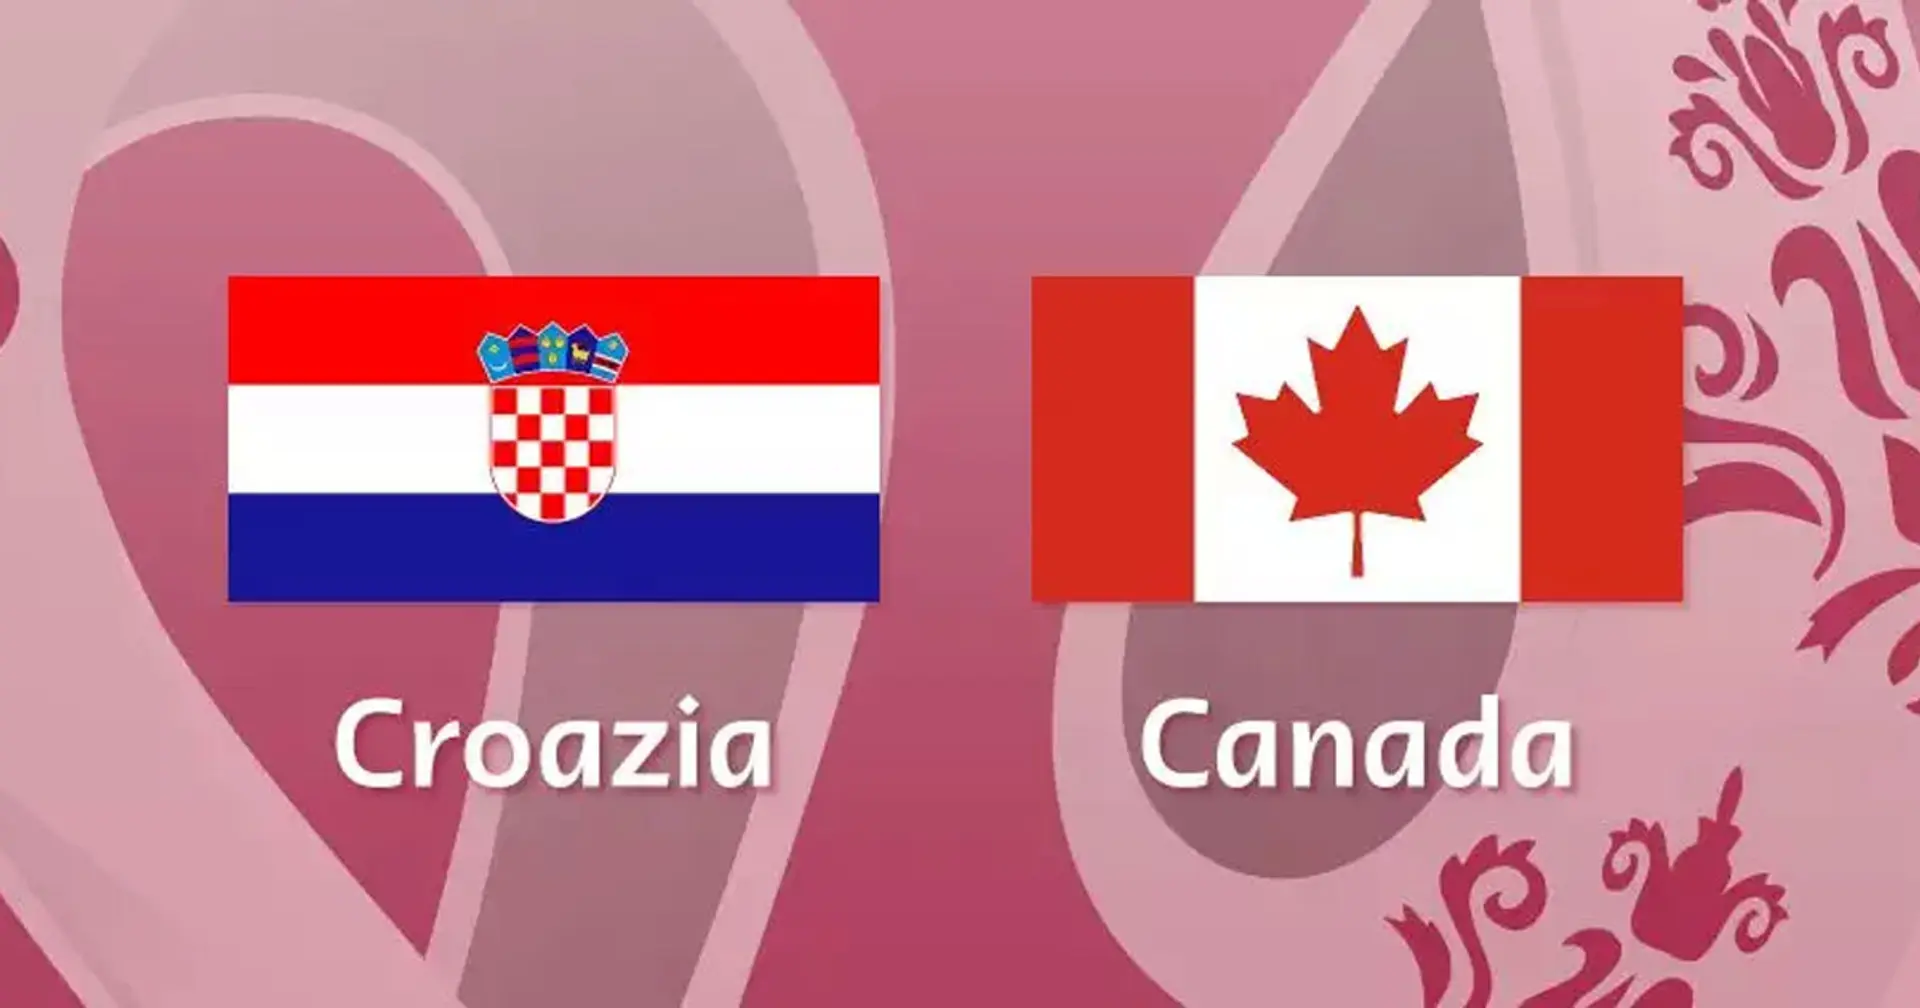 Croazia vs Canada: le formazioni ufficiali delle squadre per la partita della Coppa del Mondo Qatar 2022